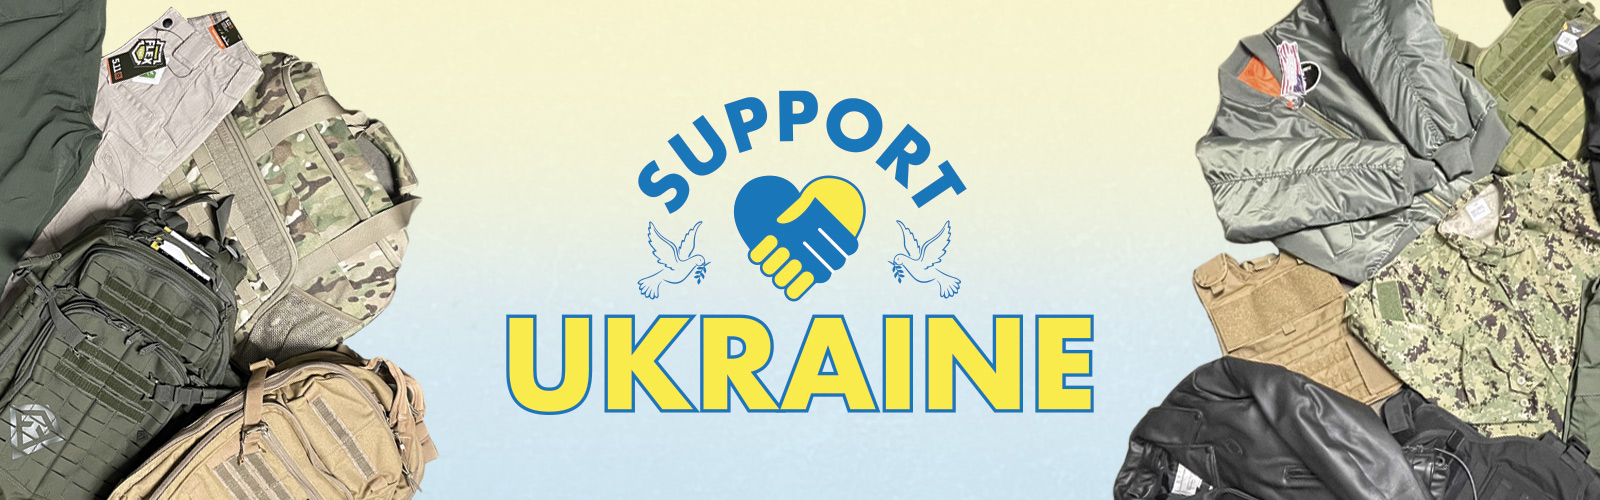 support-ukraine-site-header.jpg